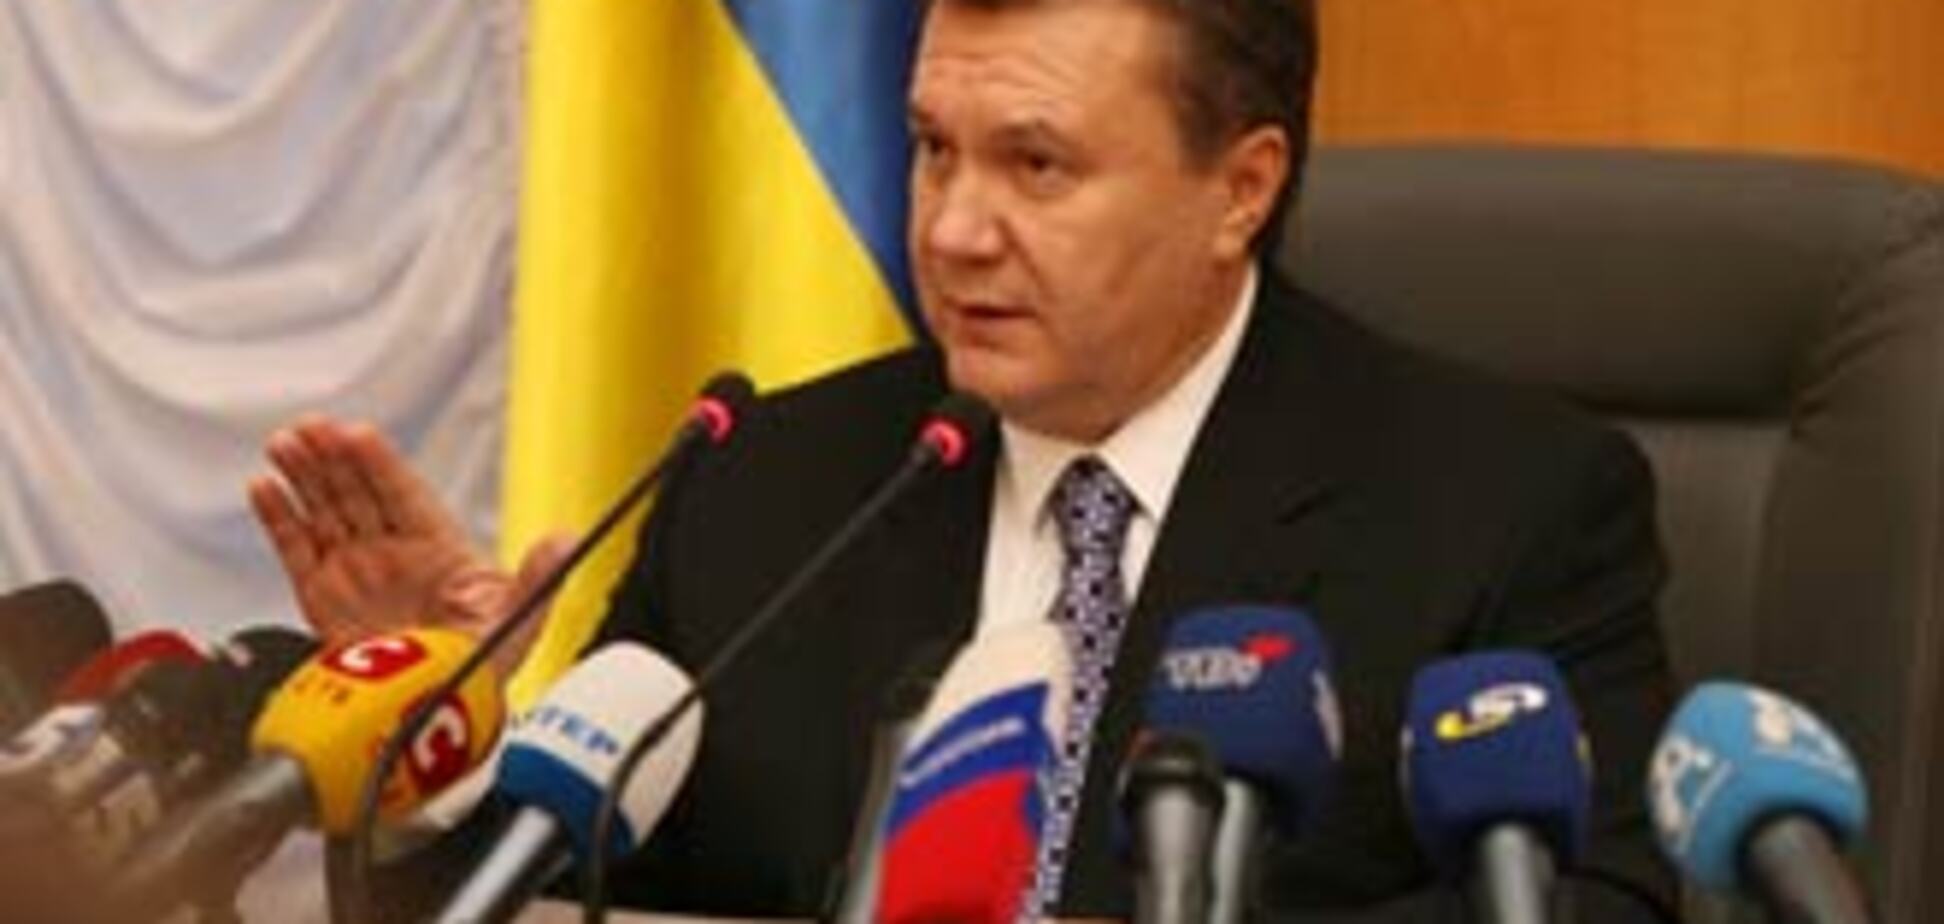 Половина украинцев не хотят ни Януковича ни Тимошенко